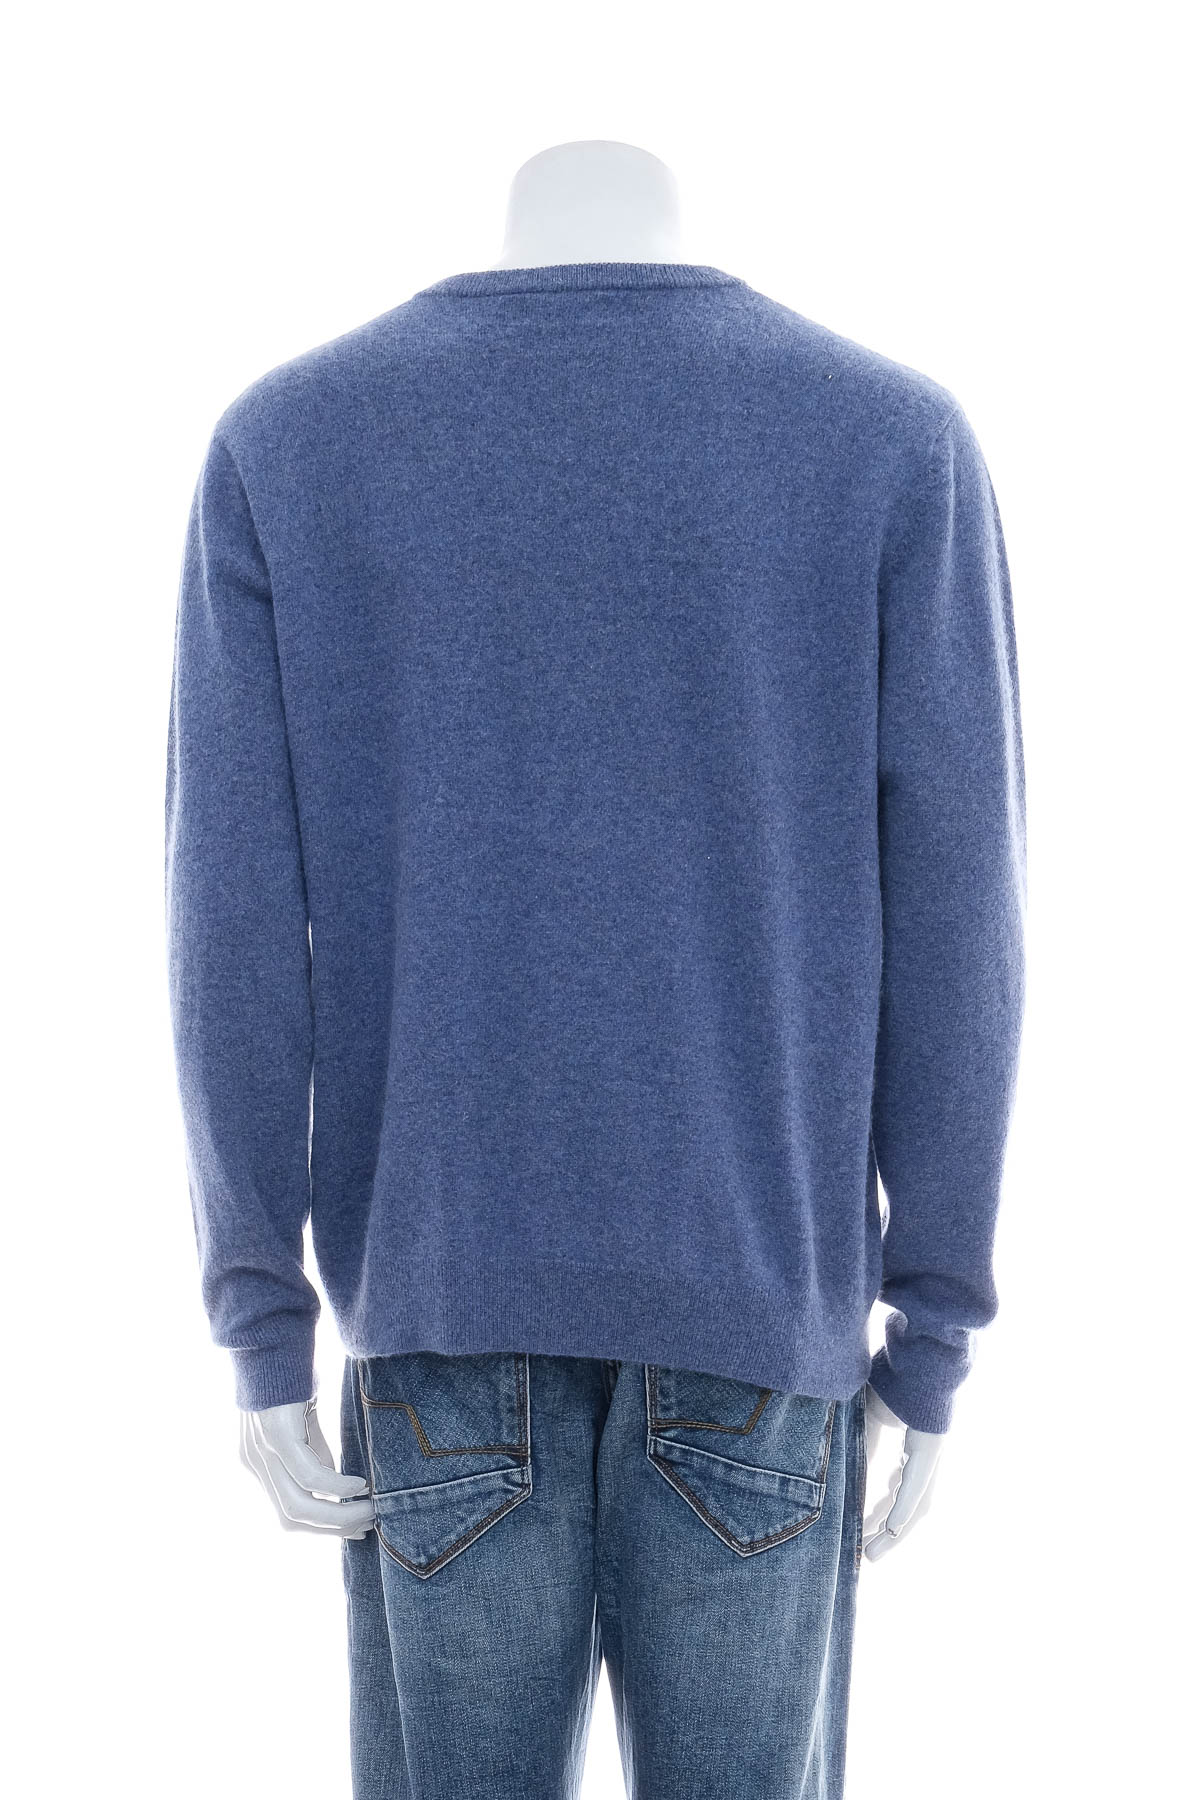 Men's sweater - Bexleys - 1